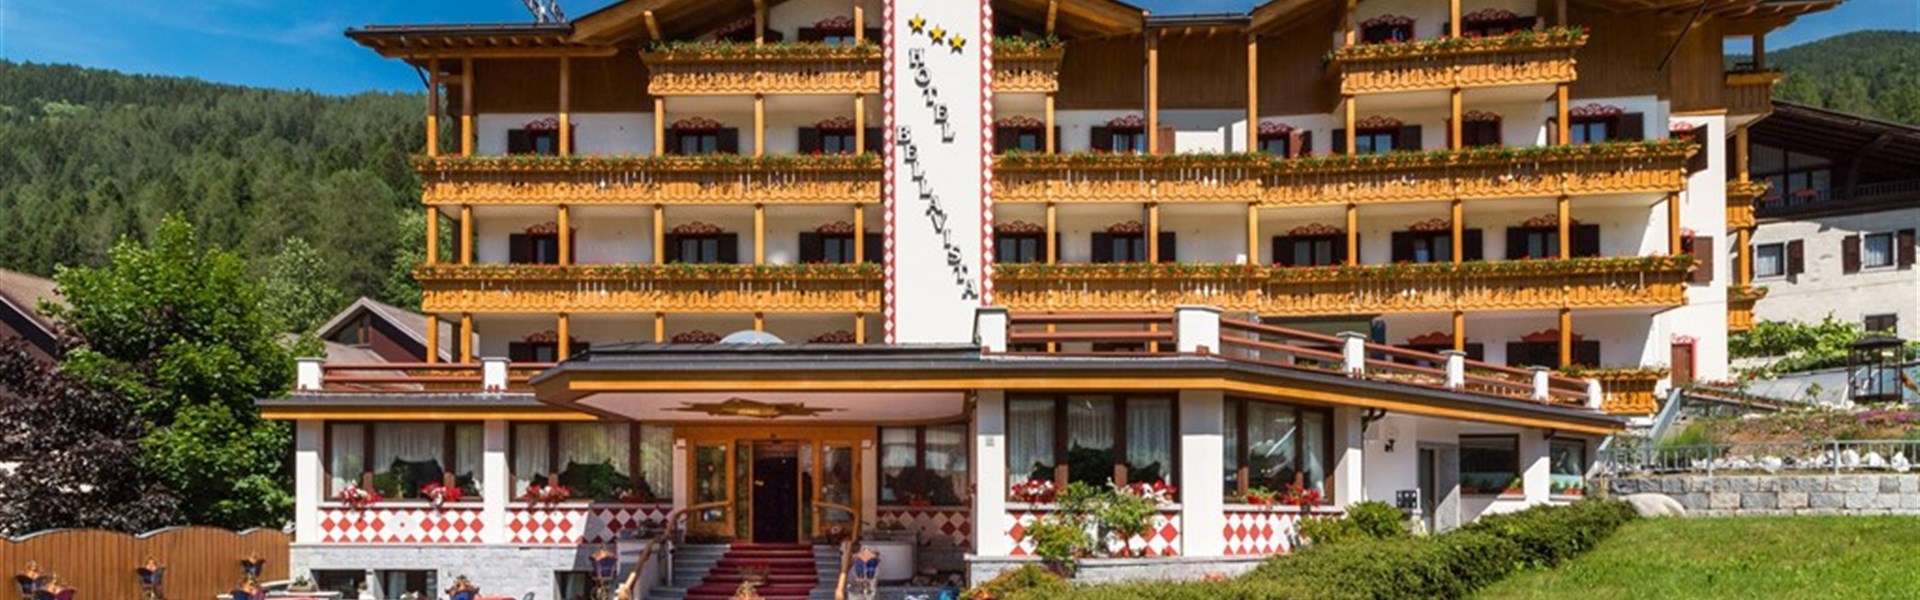 Marco Polo - Hotel Bellavista (Léto/Sommer) - 